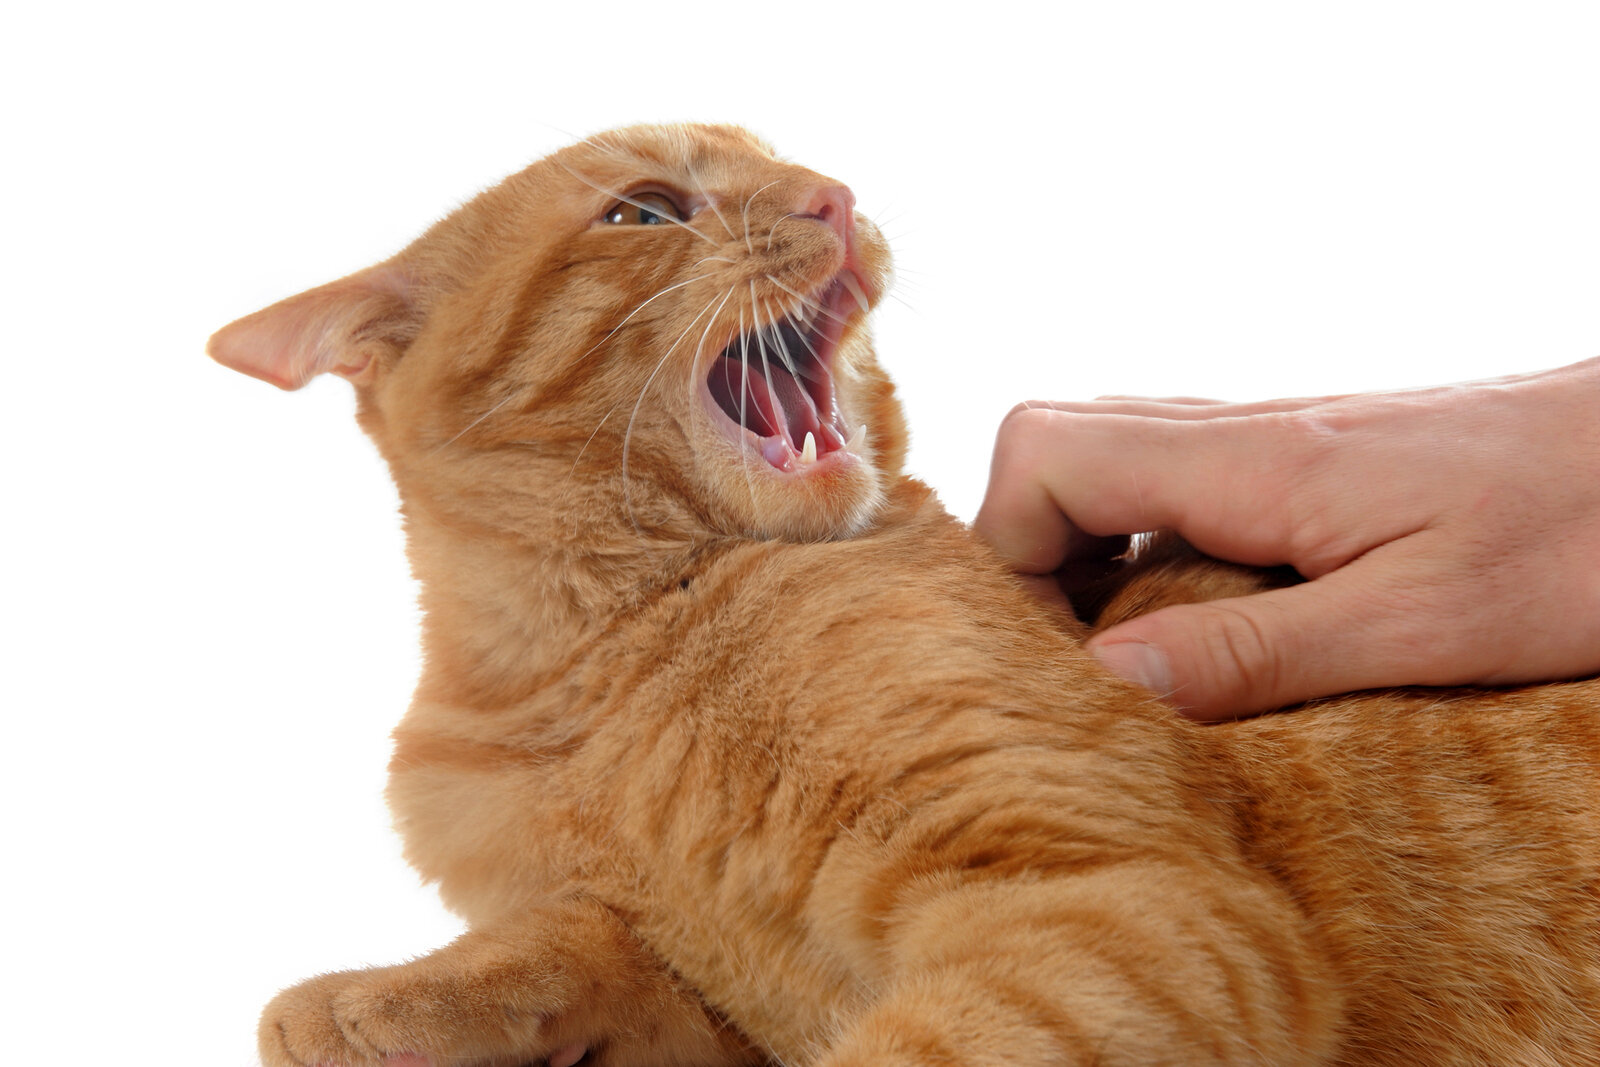 dokunulunca agresif tepki veren kedi